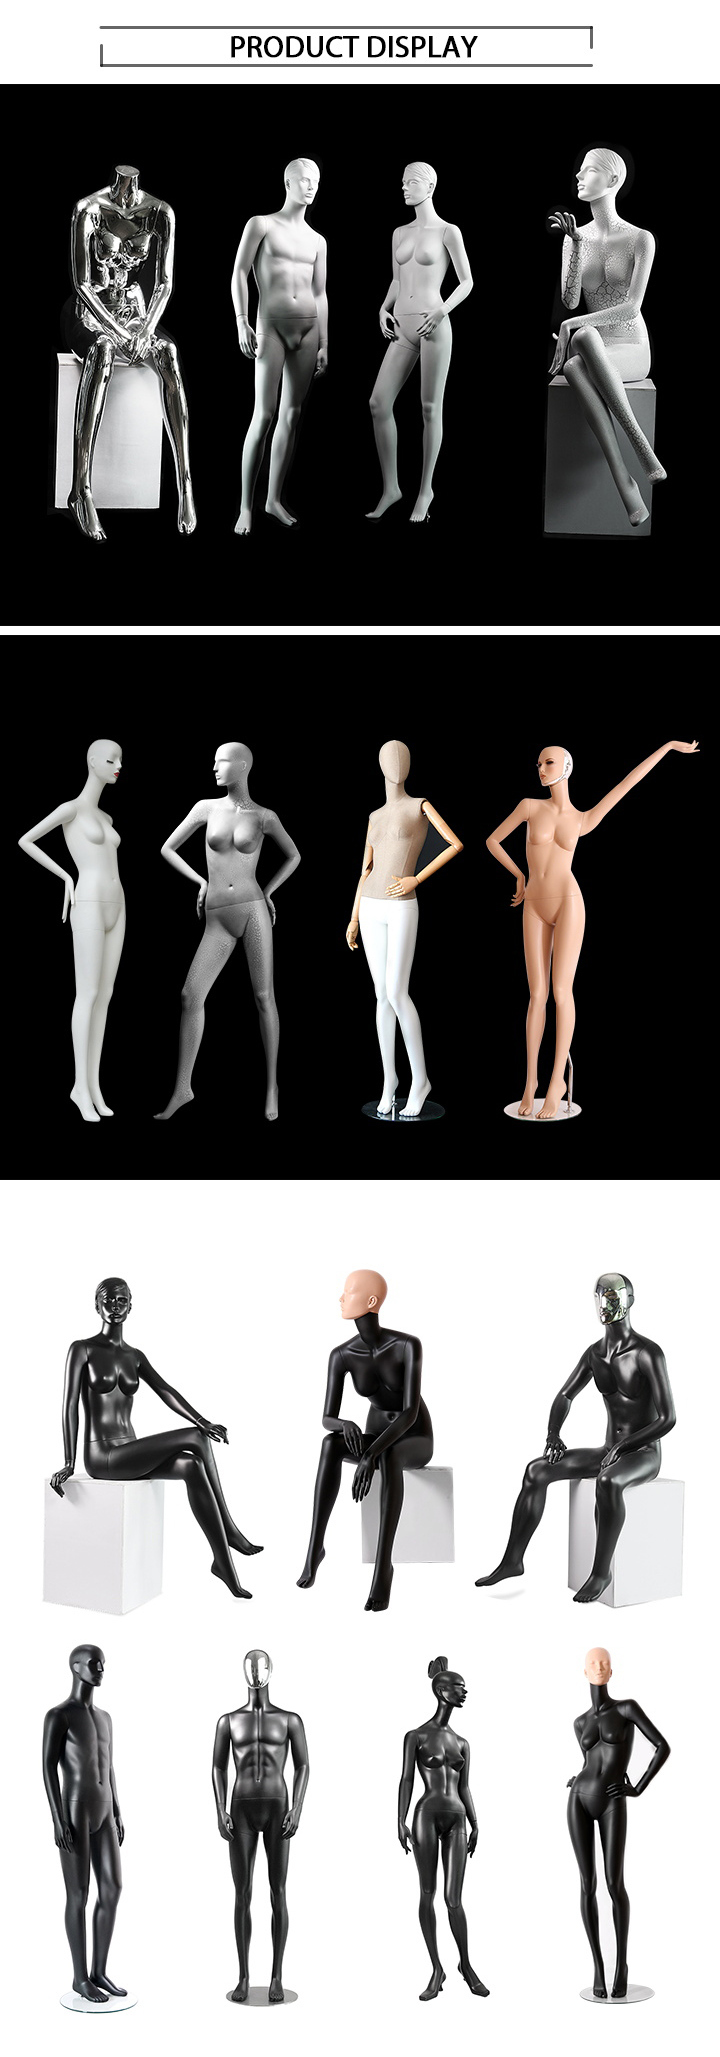 Custom Sport Display Full Body Legs Female Mannequin Price